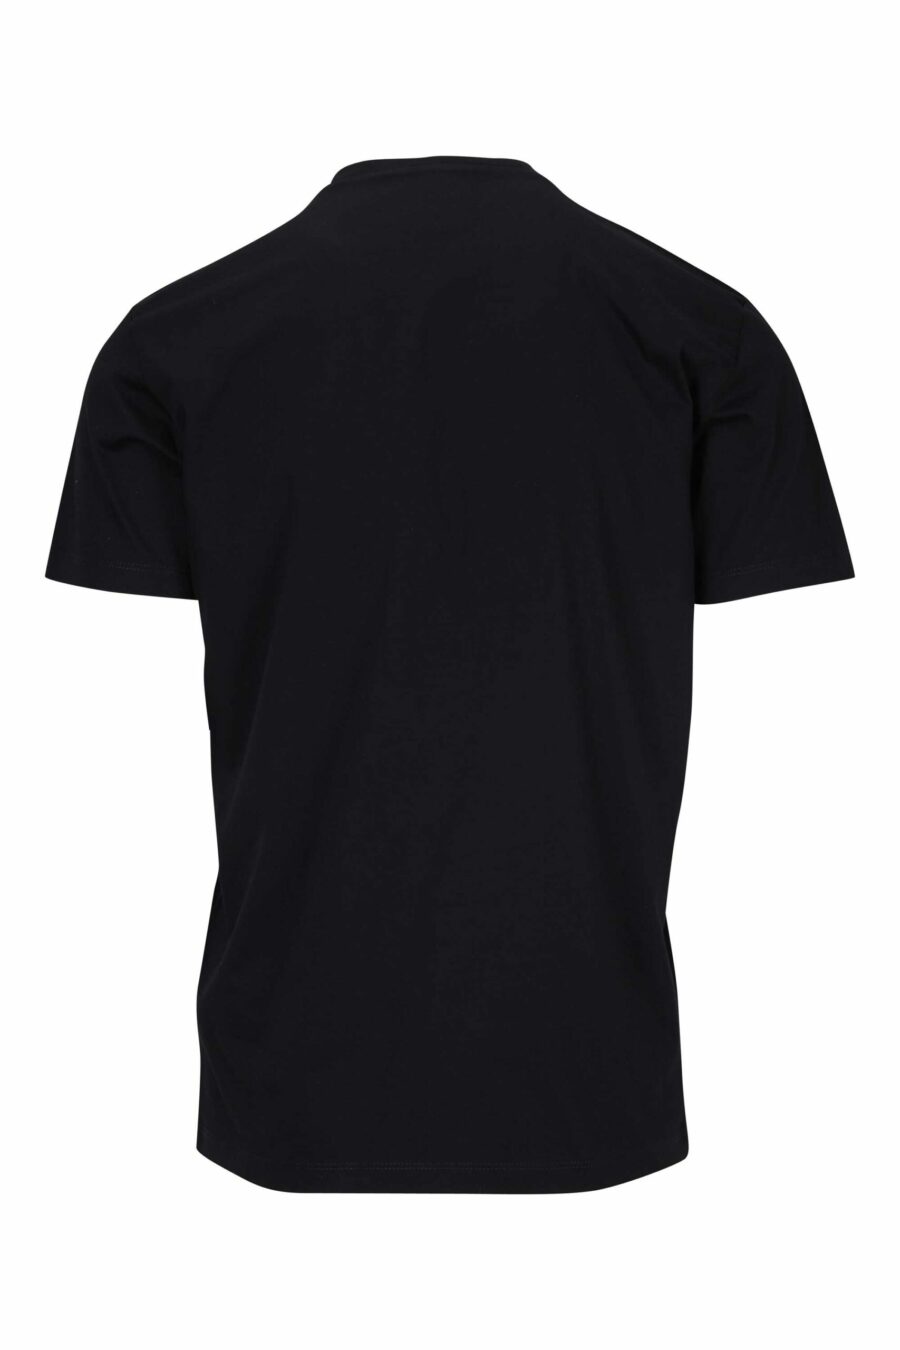 T-shirt preta com o logótipo "icon" dobrado - 8054148400989 1 à escala